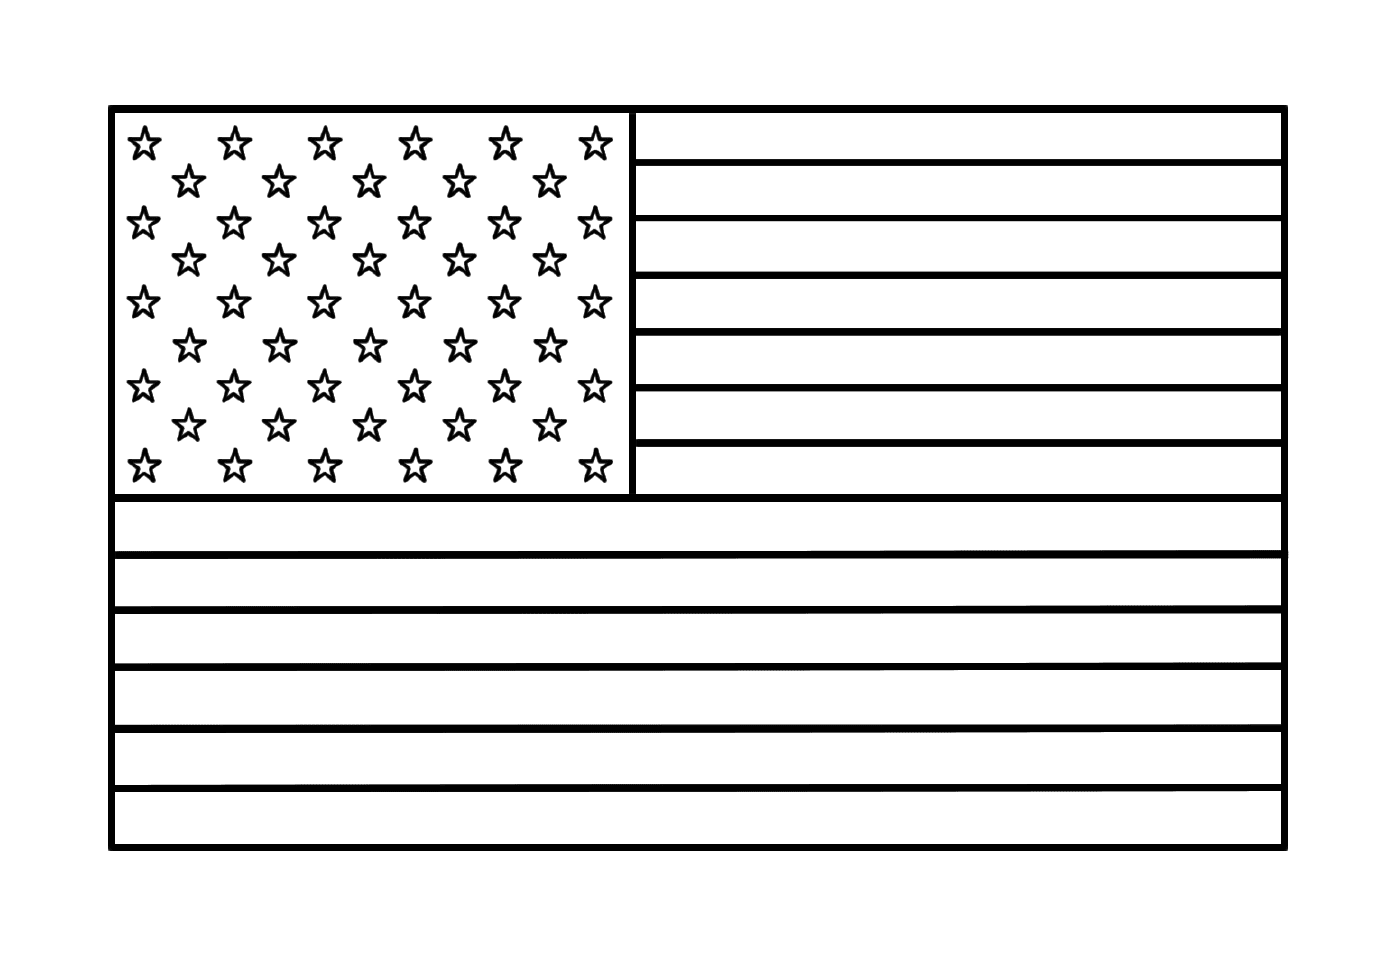  带有恒星的原始美国国旗 